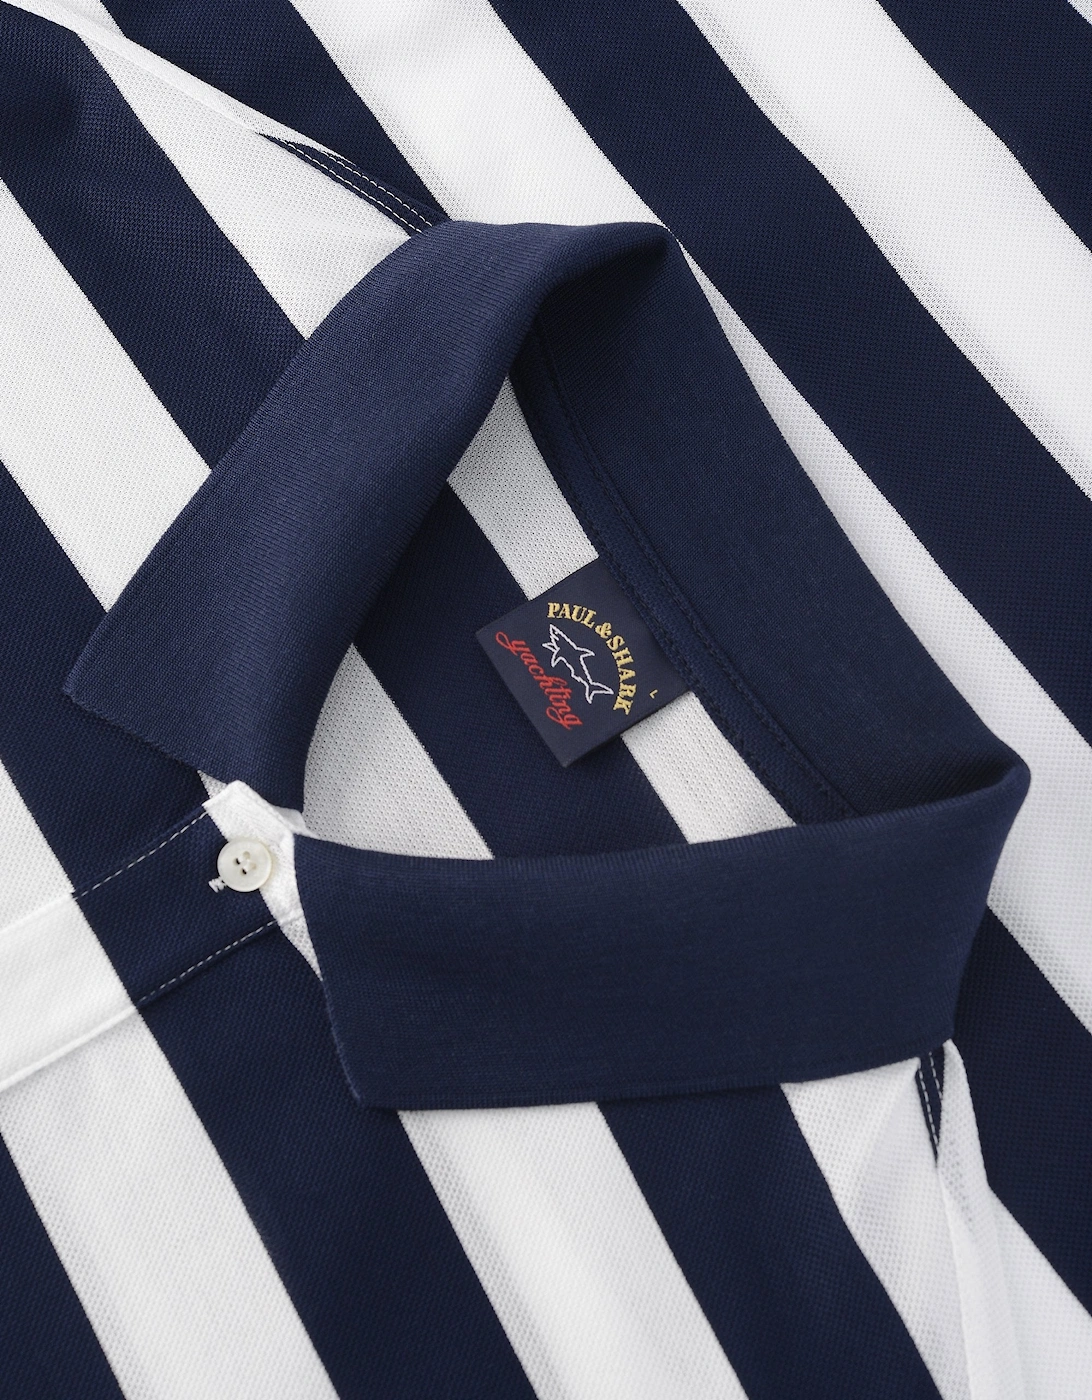 Stripe Pique Cotton Polo Shirt Navy